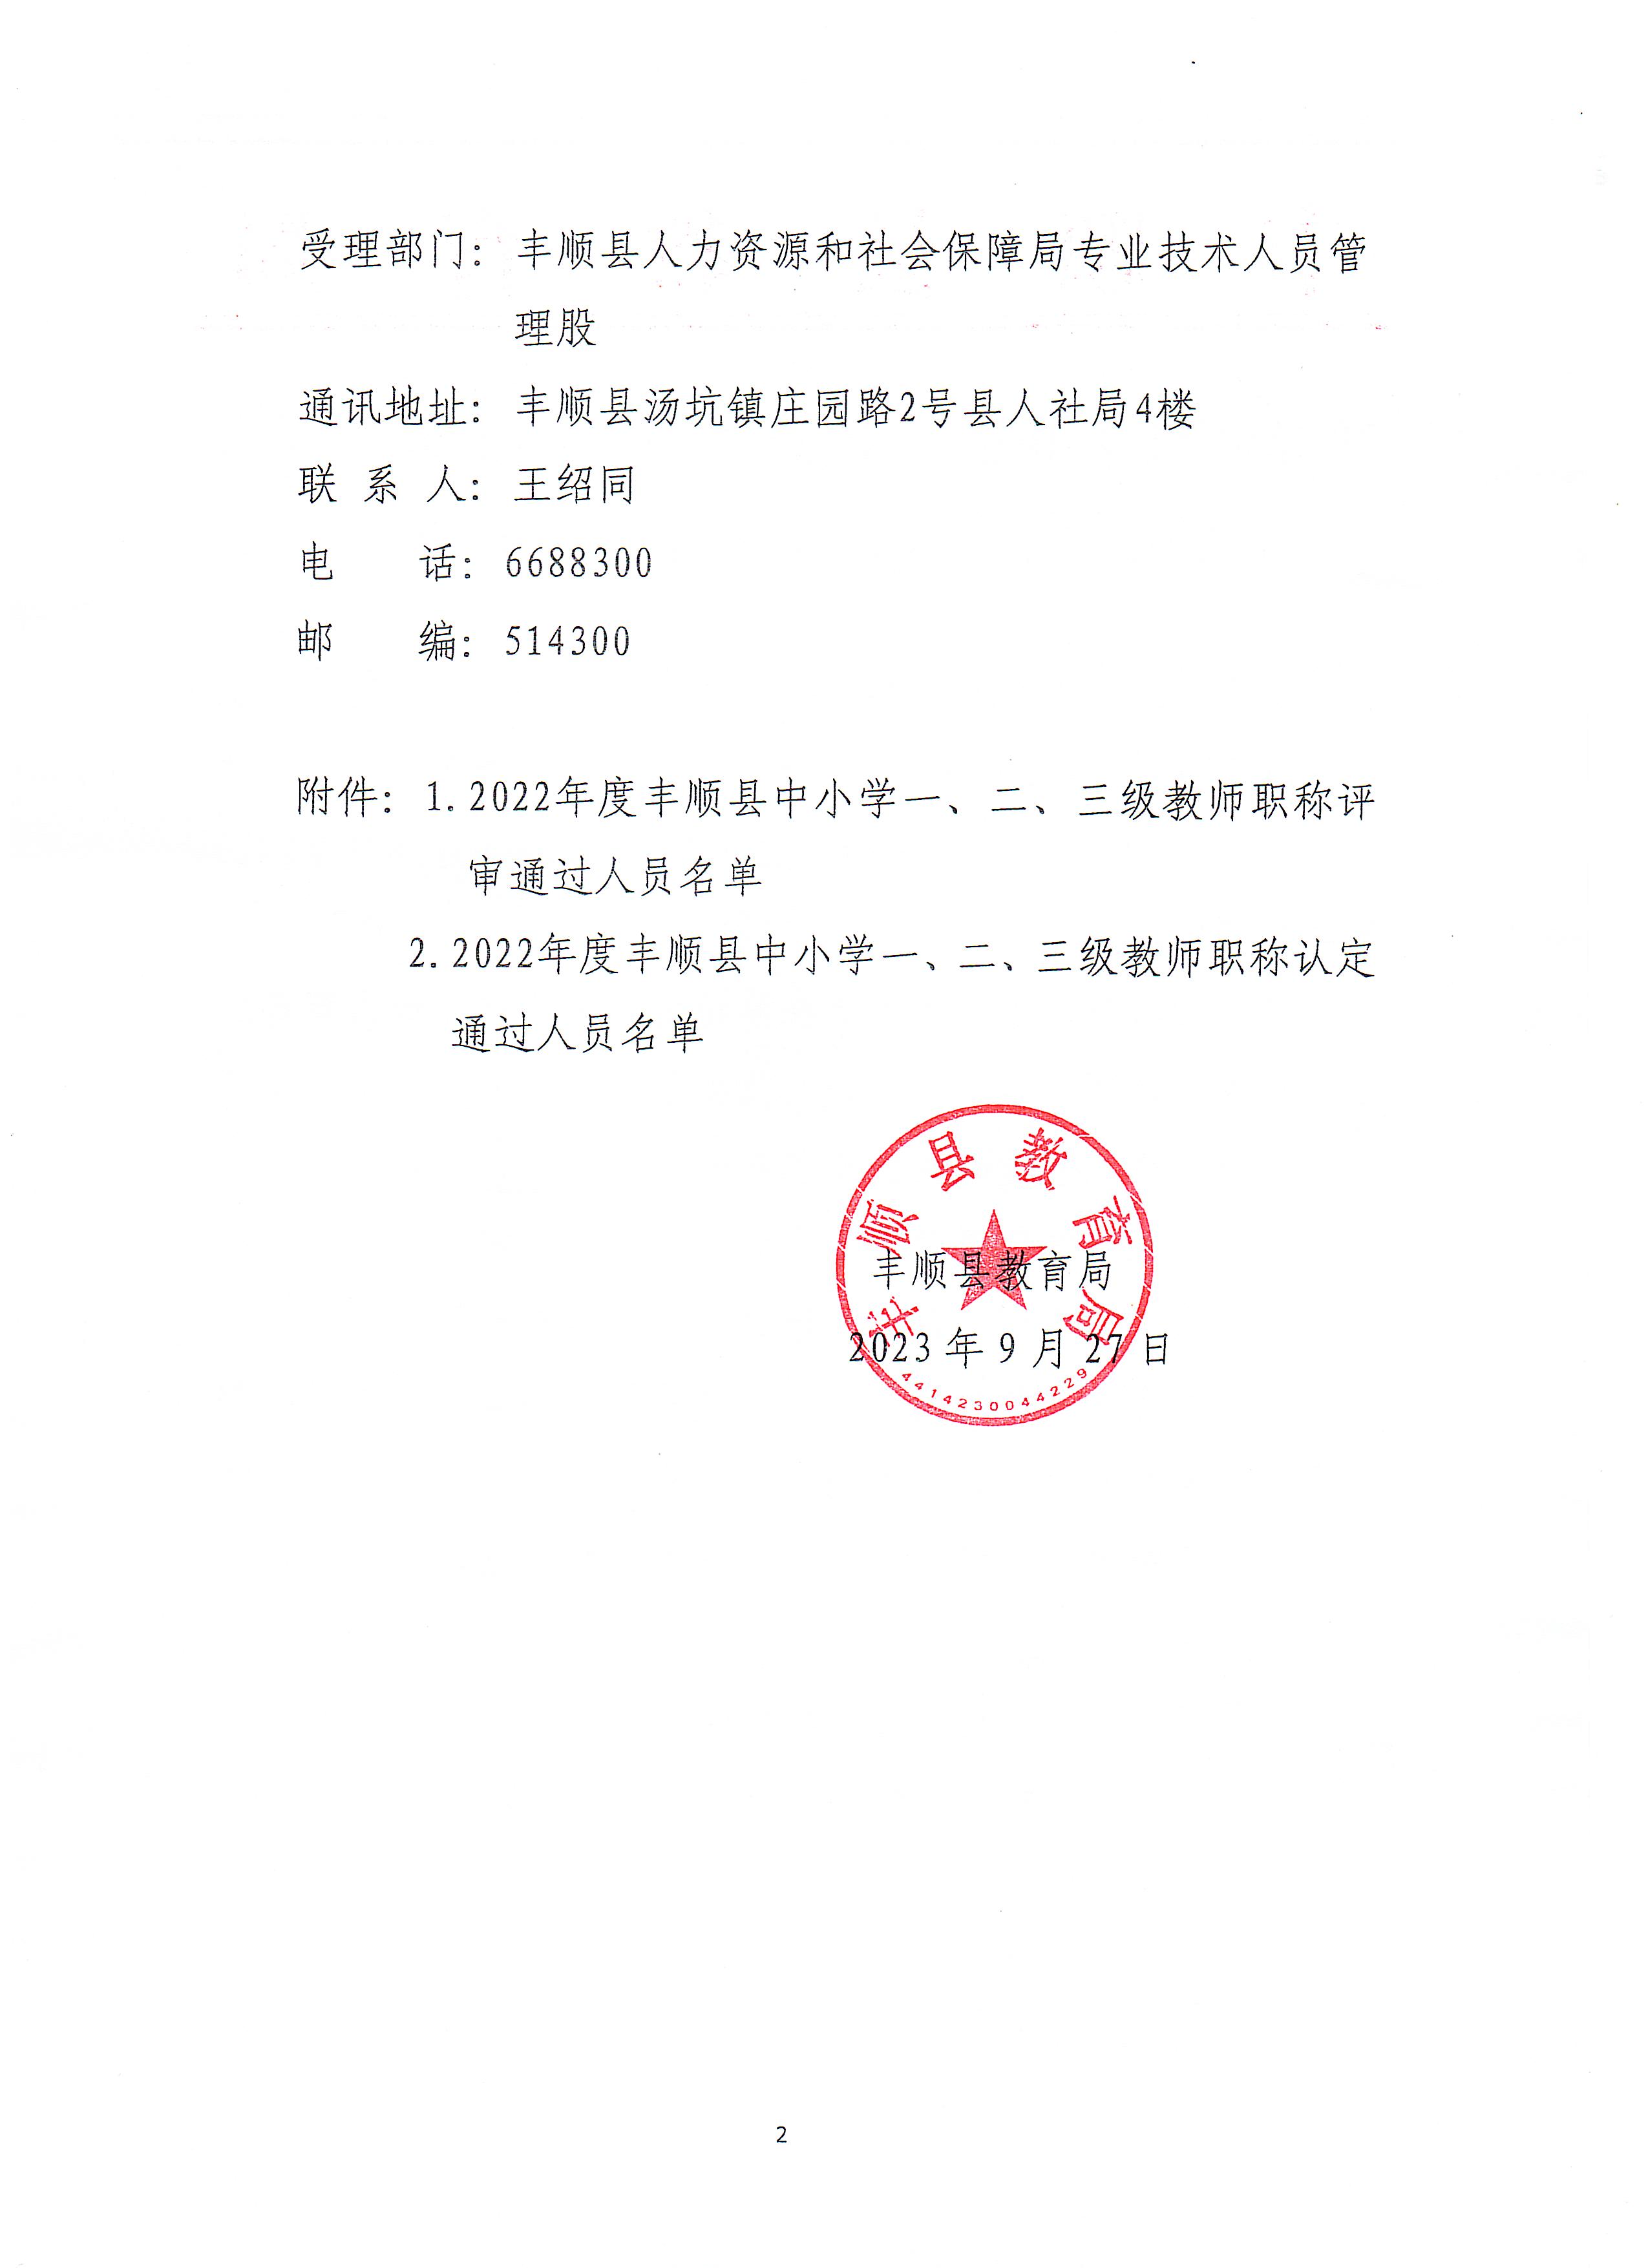 2022年度丰顺县中小学中、初级教师职称评审委员会评审（认定）通过人员公示_页面_2.jpg